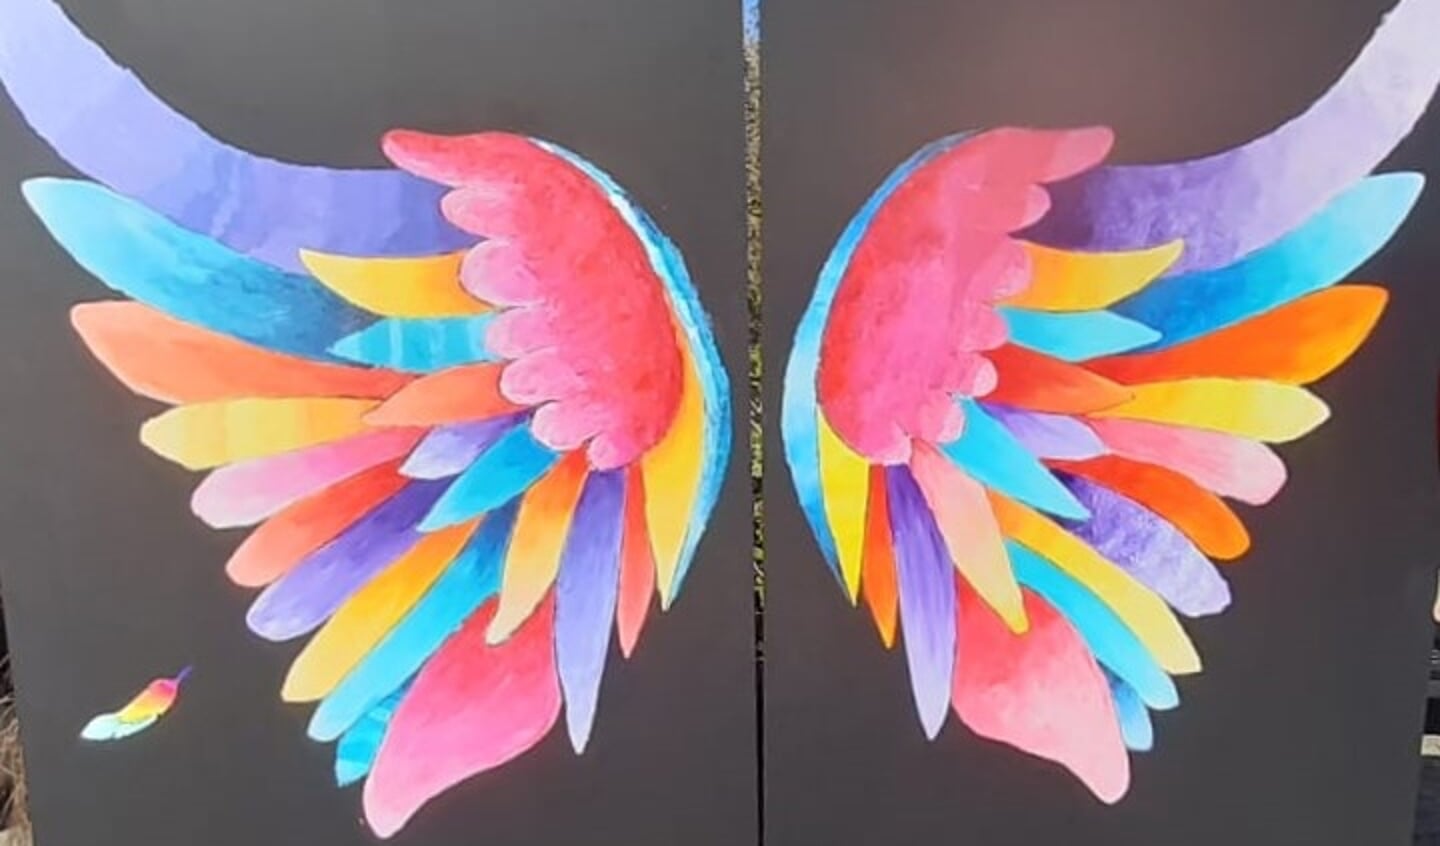 De kleurrijke vleugels van de vrede.